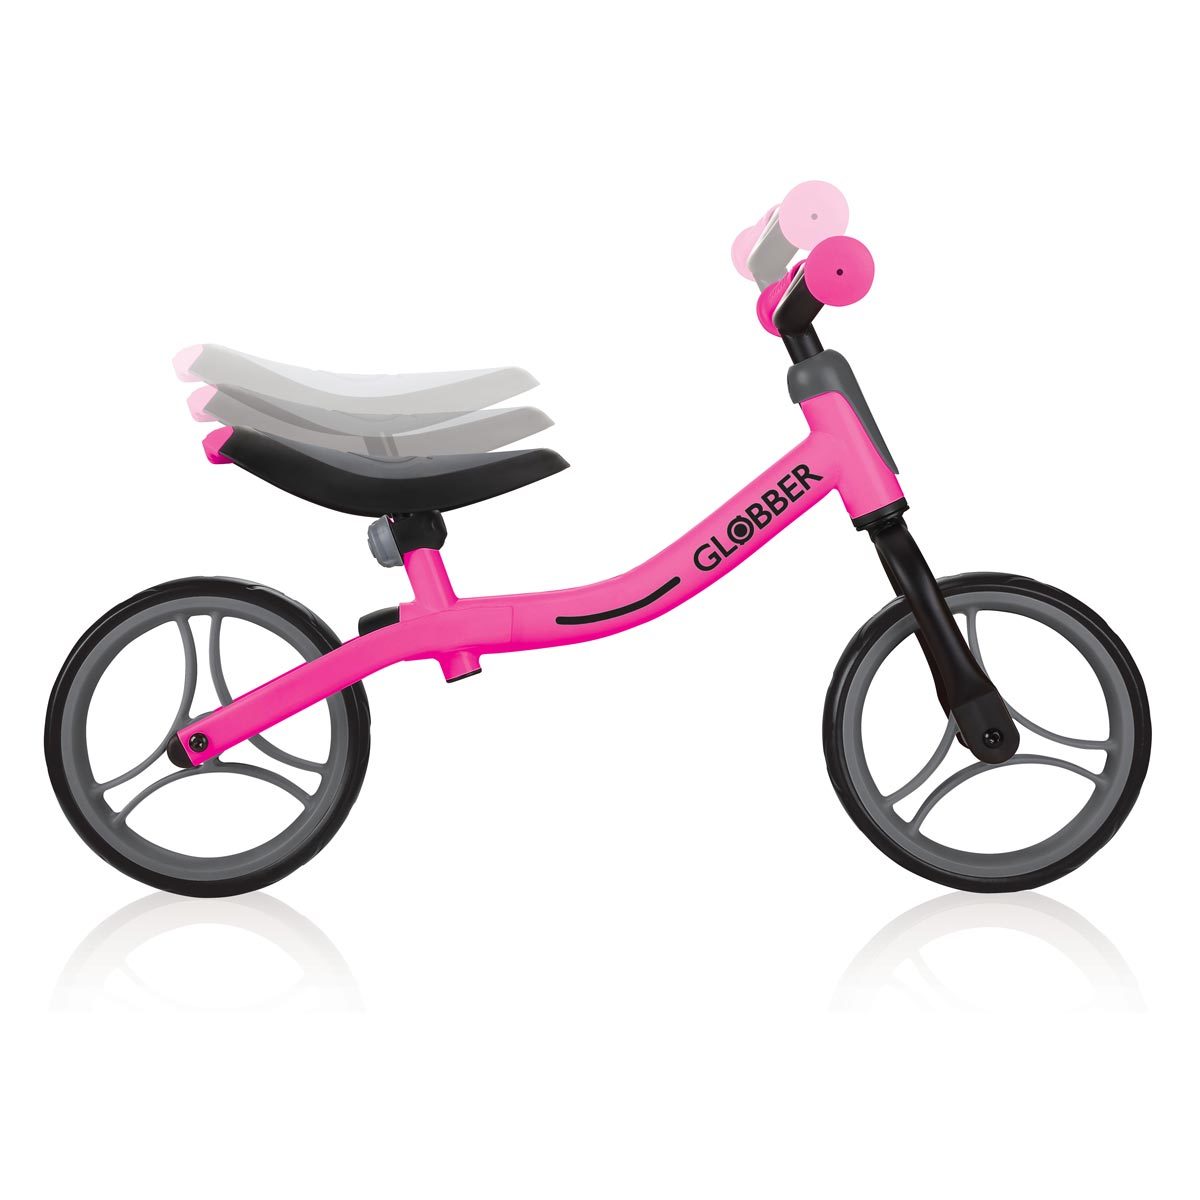 Side image with adjustable seat globber go bike